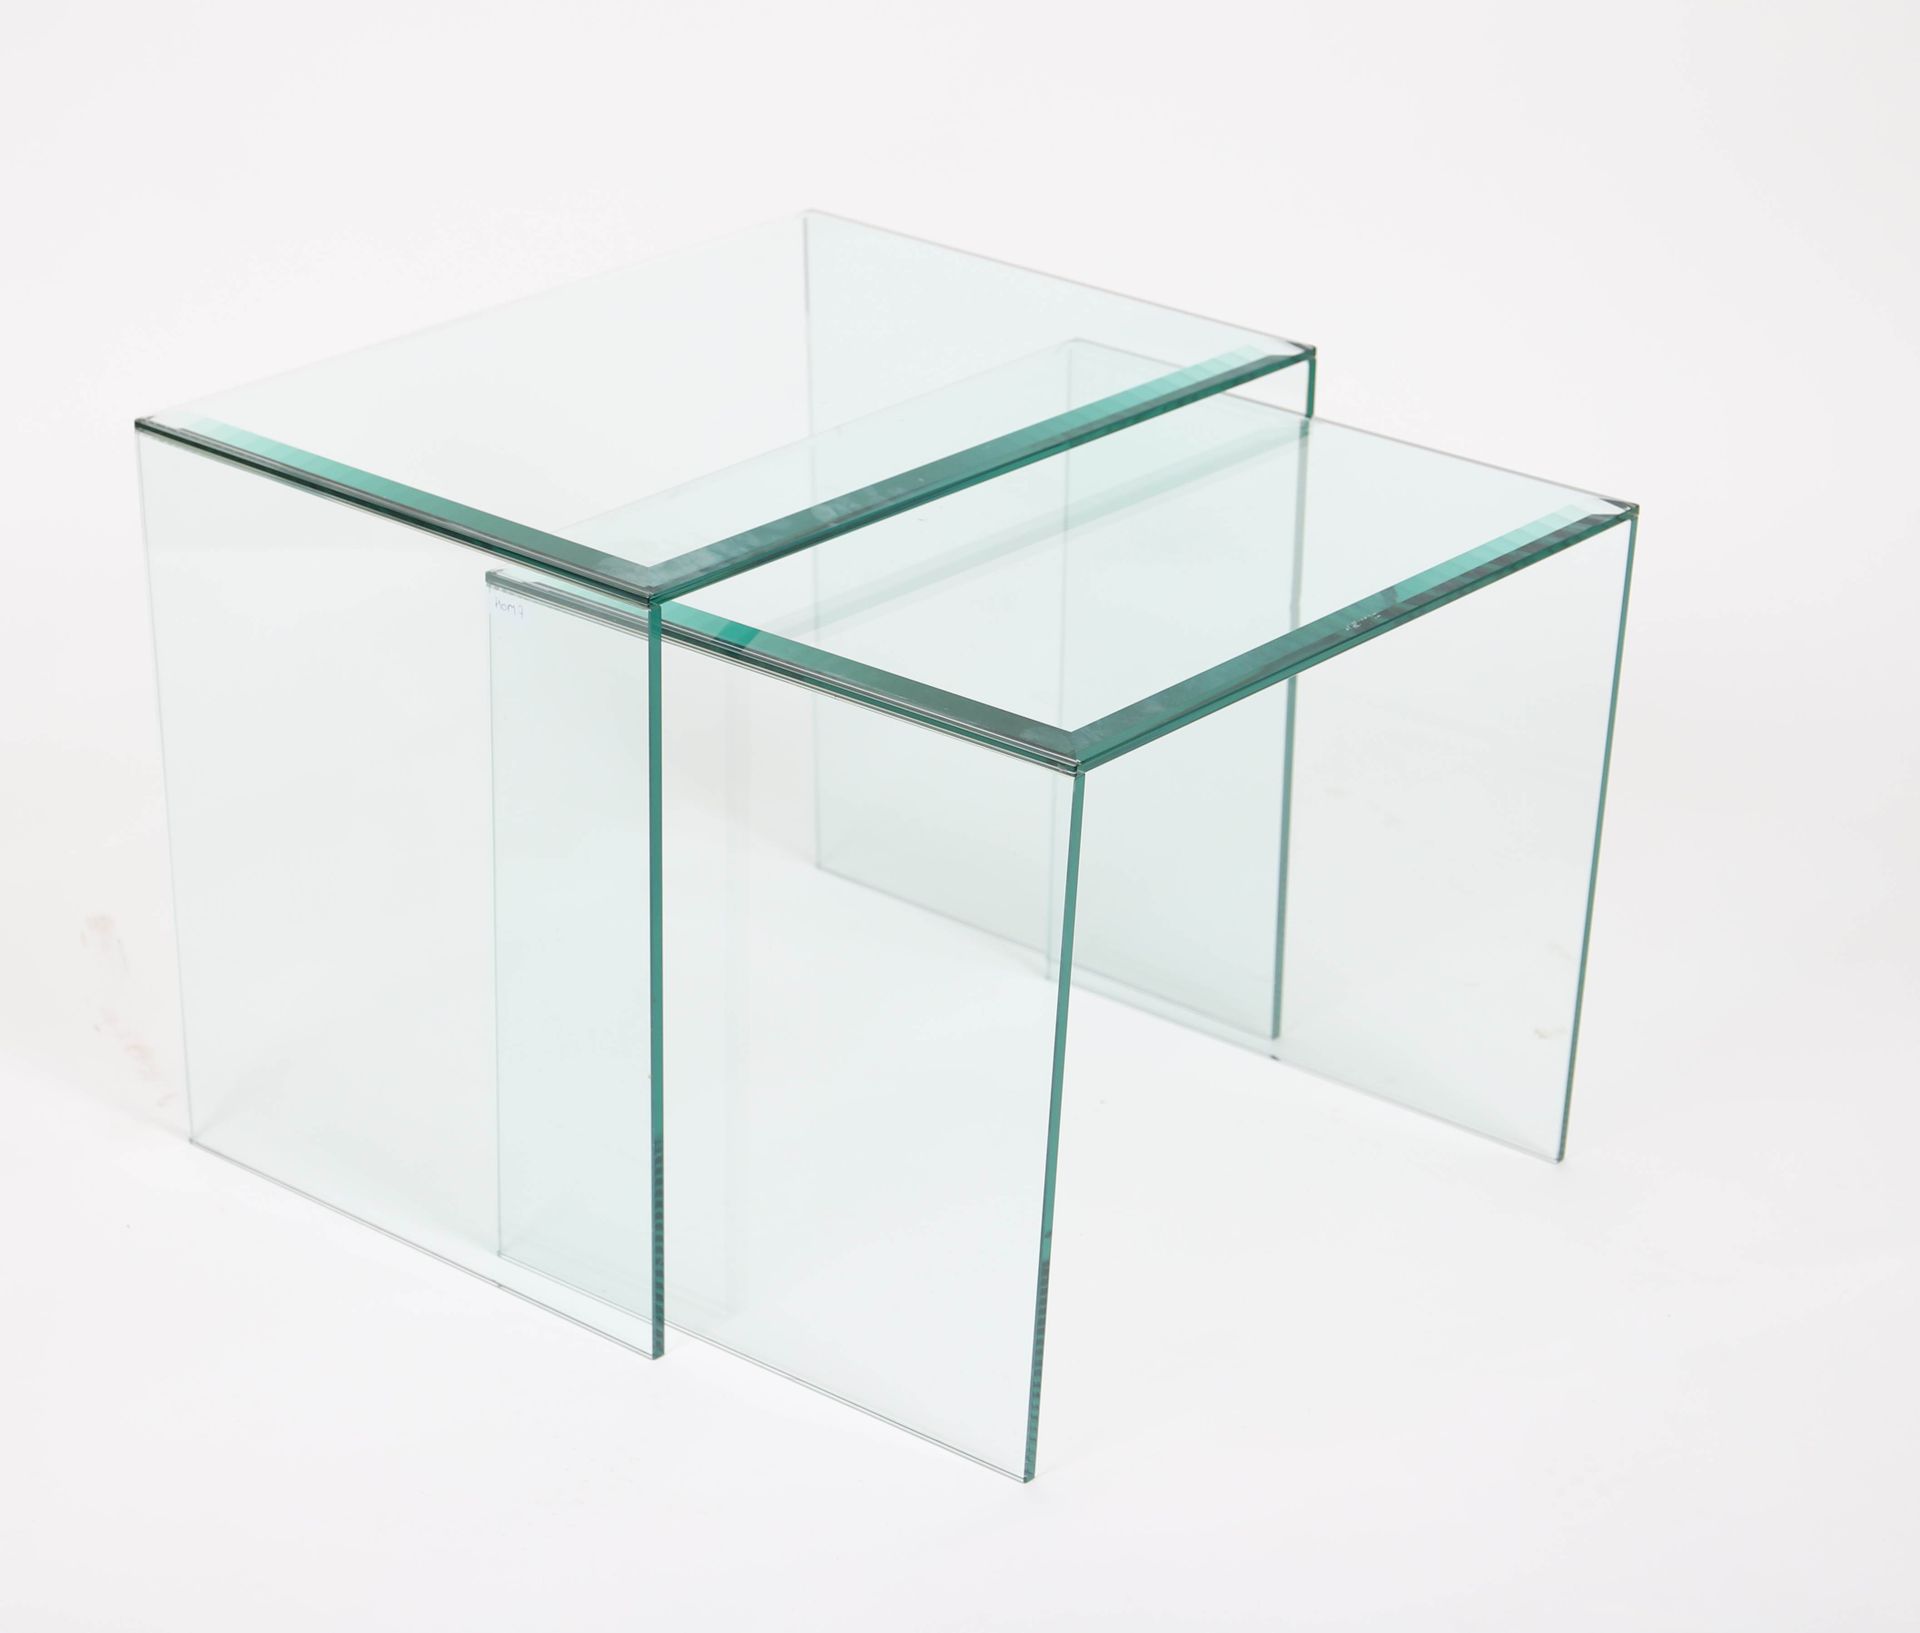 Null 玻璃桌

一套两个玻璃桌，嵌套式。

尺寸：高：44；宽：56；深：40厘米